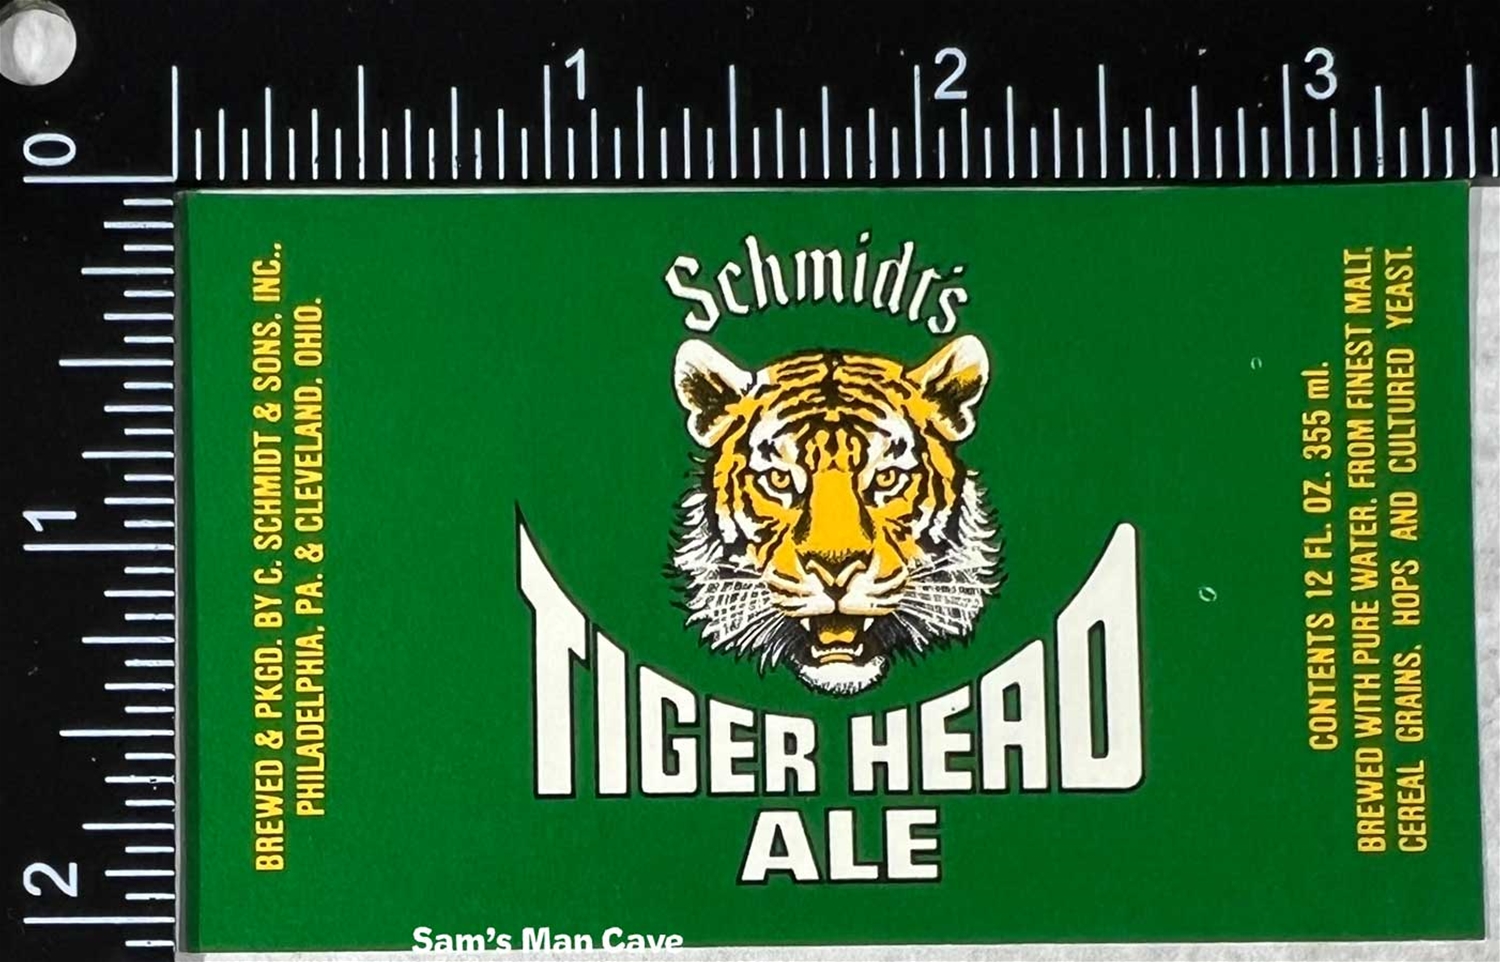 Schmidt's Tiger Head Ale Beer Label